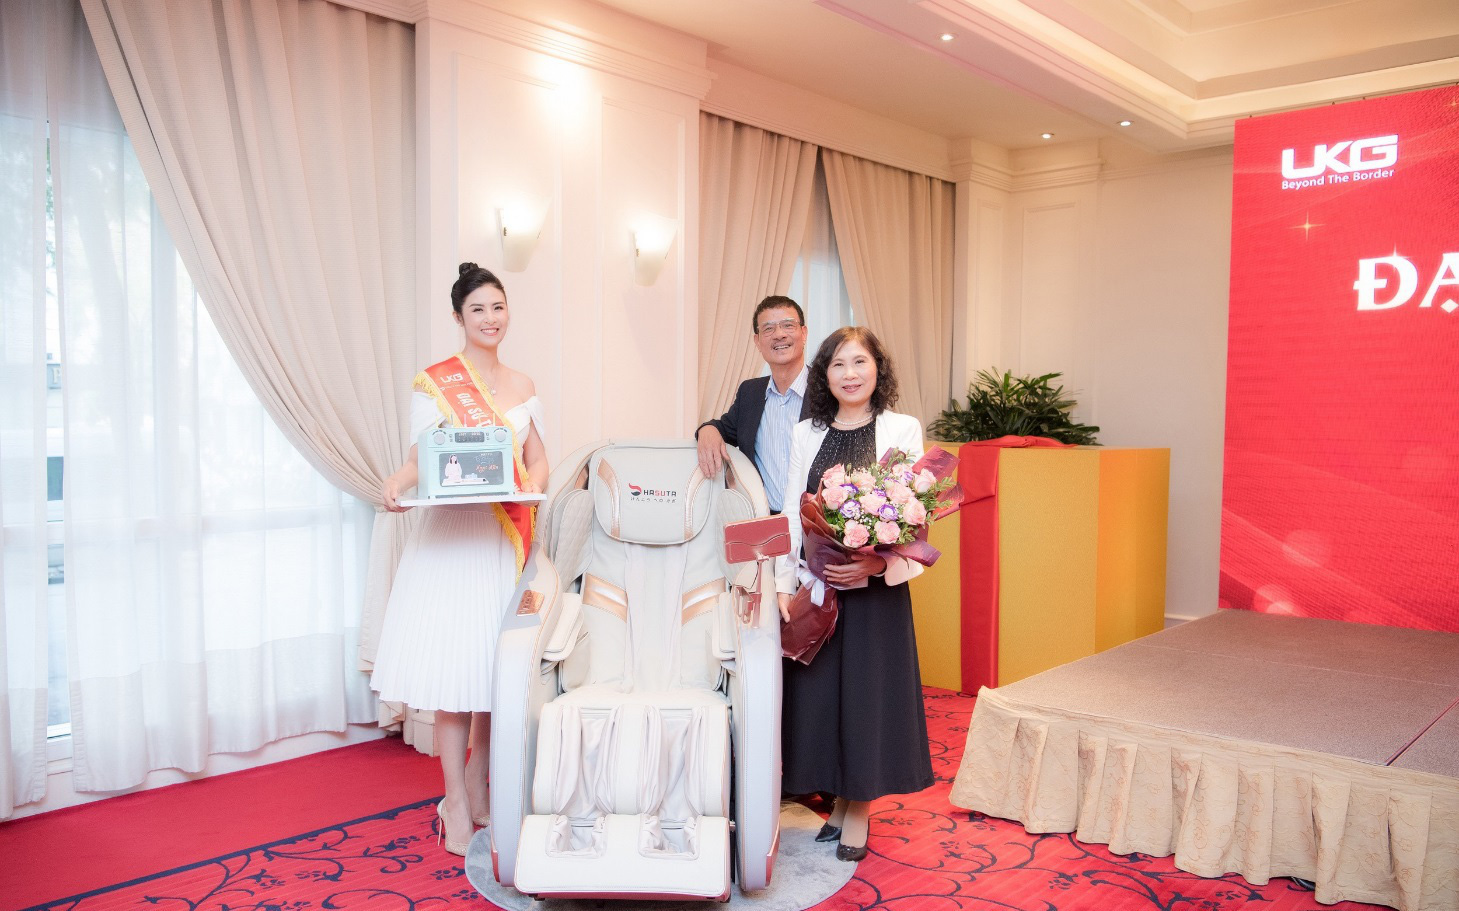 Hoa hậu Ngọc Hân tặng cha mẹ ghế massage Hasuta như món quà sức khỏe